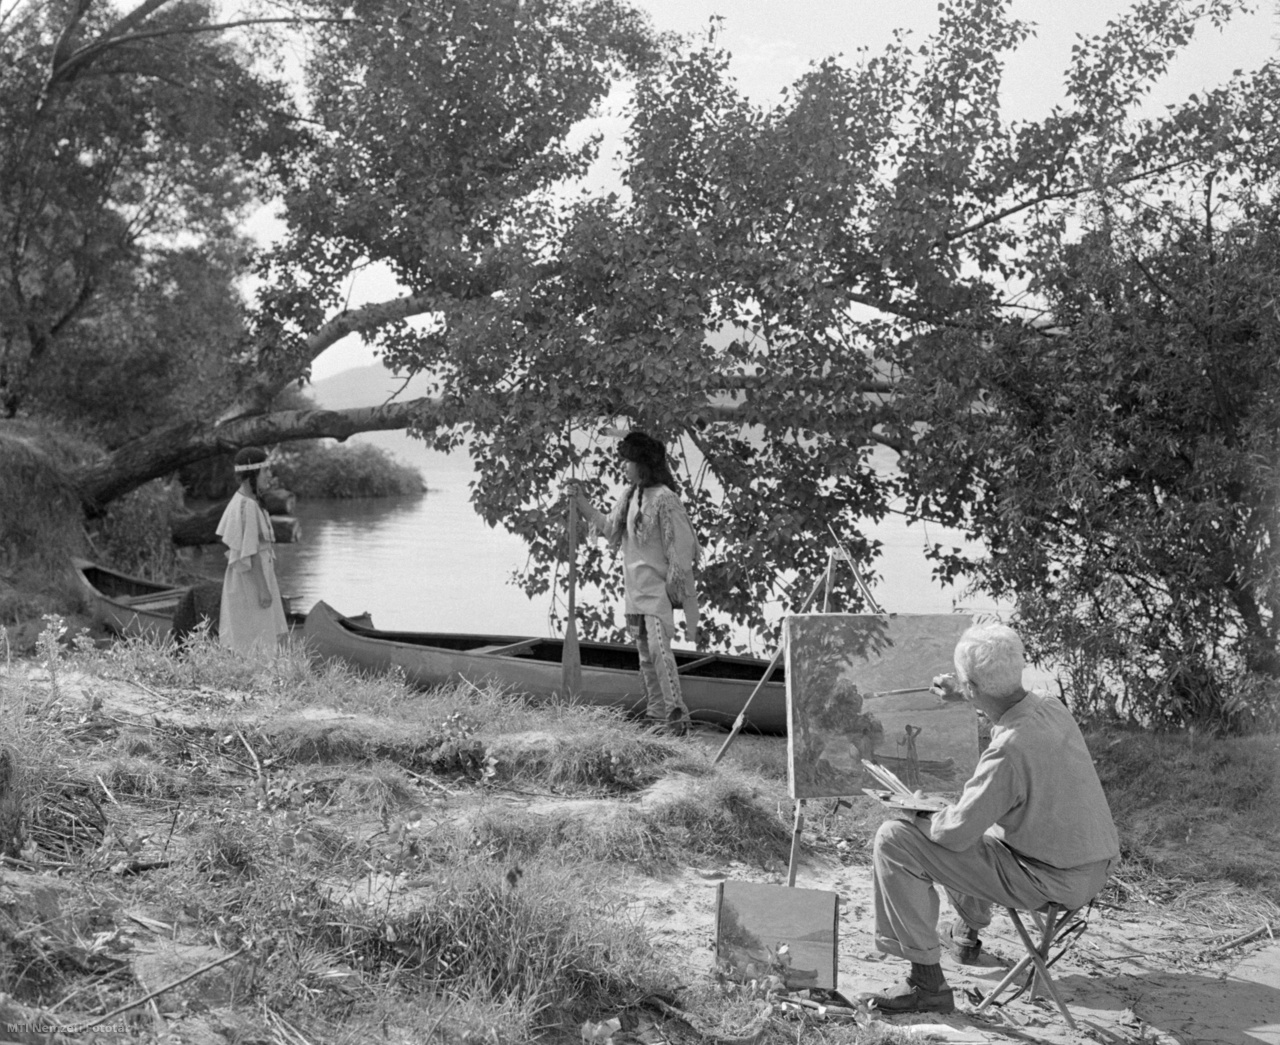 Haranglábi Nemes József festőművész megörökíti Ülő Mókust és Musztangot, az indián tábor lakóit - Hegymegi Kiss Áronnét és Borsányi Elemérát - a Kőgeszteli-szigeten 1961. augusztus 17-én.